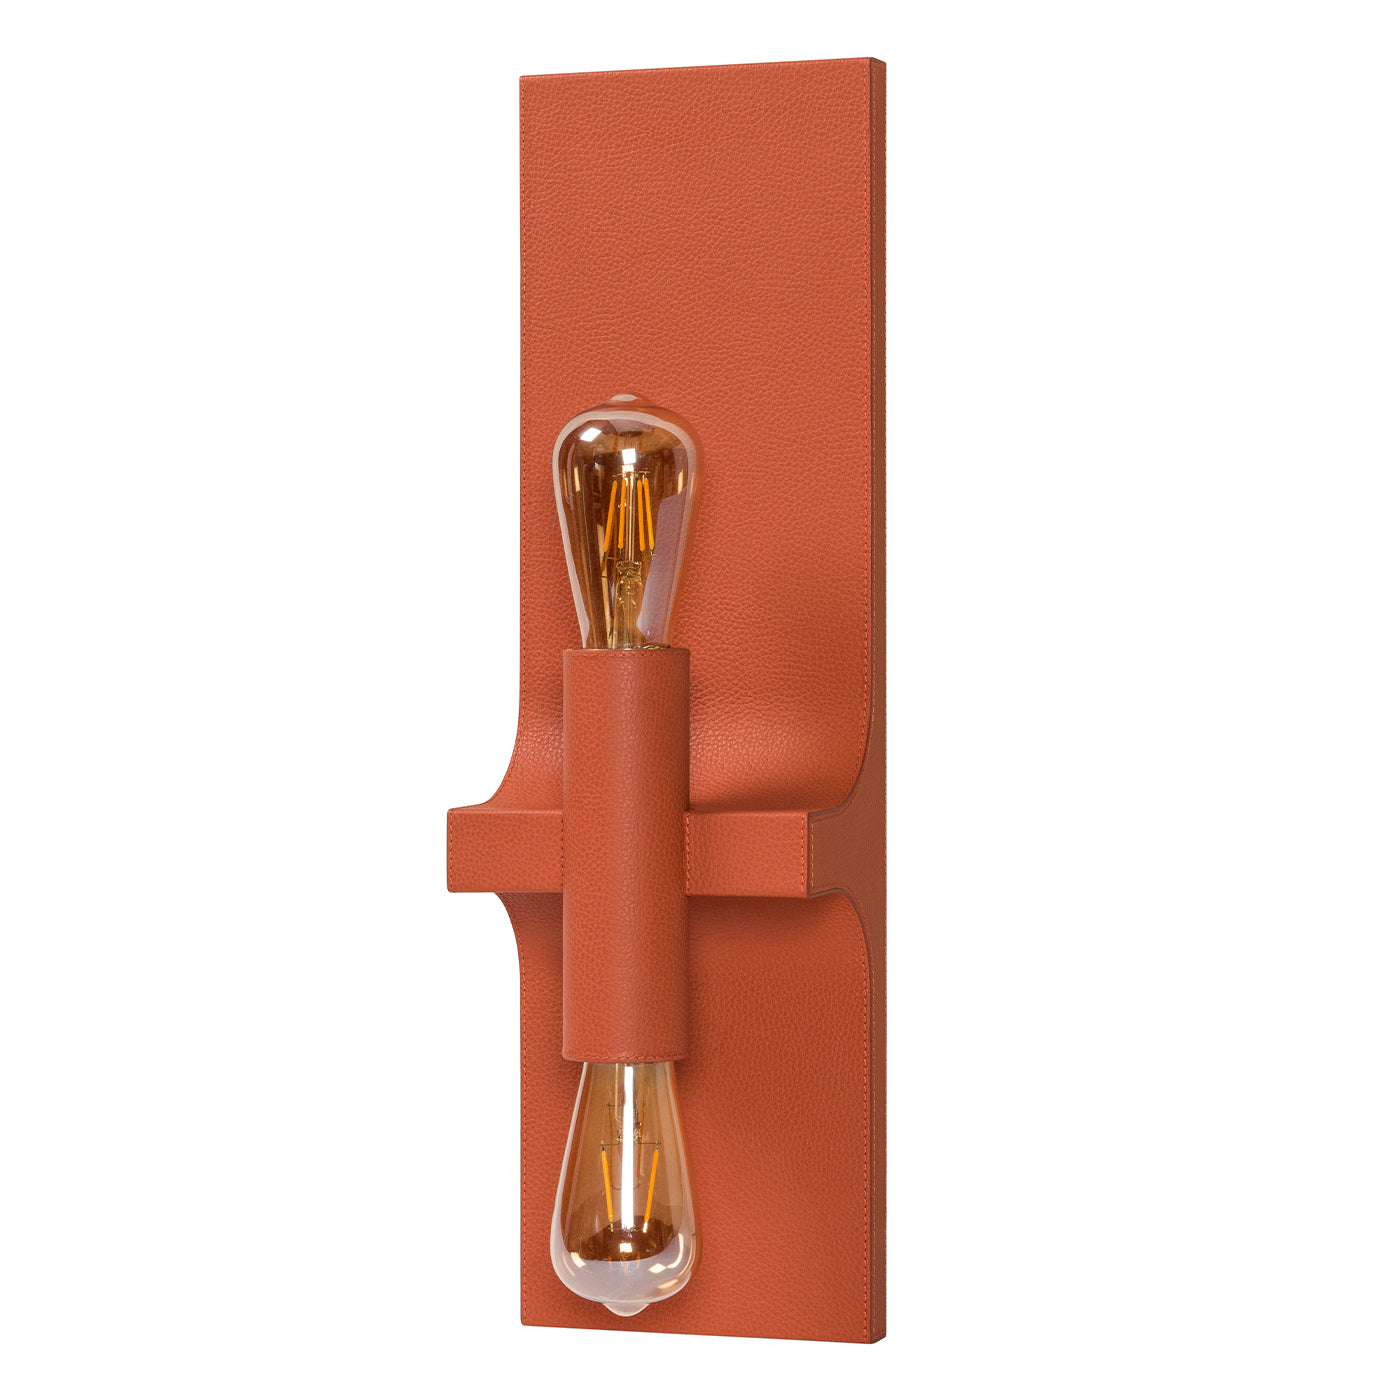 Walcott Twin Orange Leather Wall Lamp - Alternative view 1